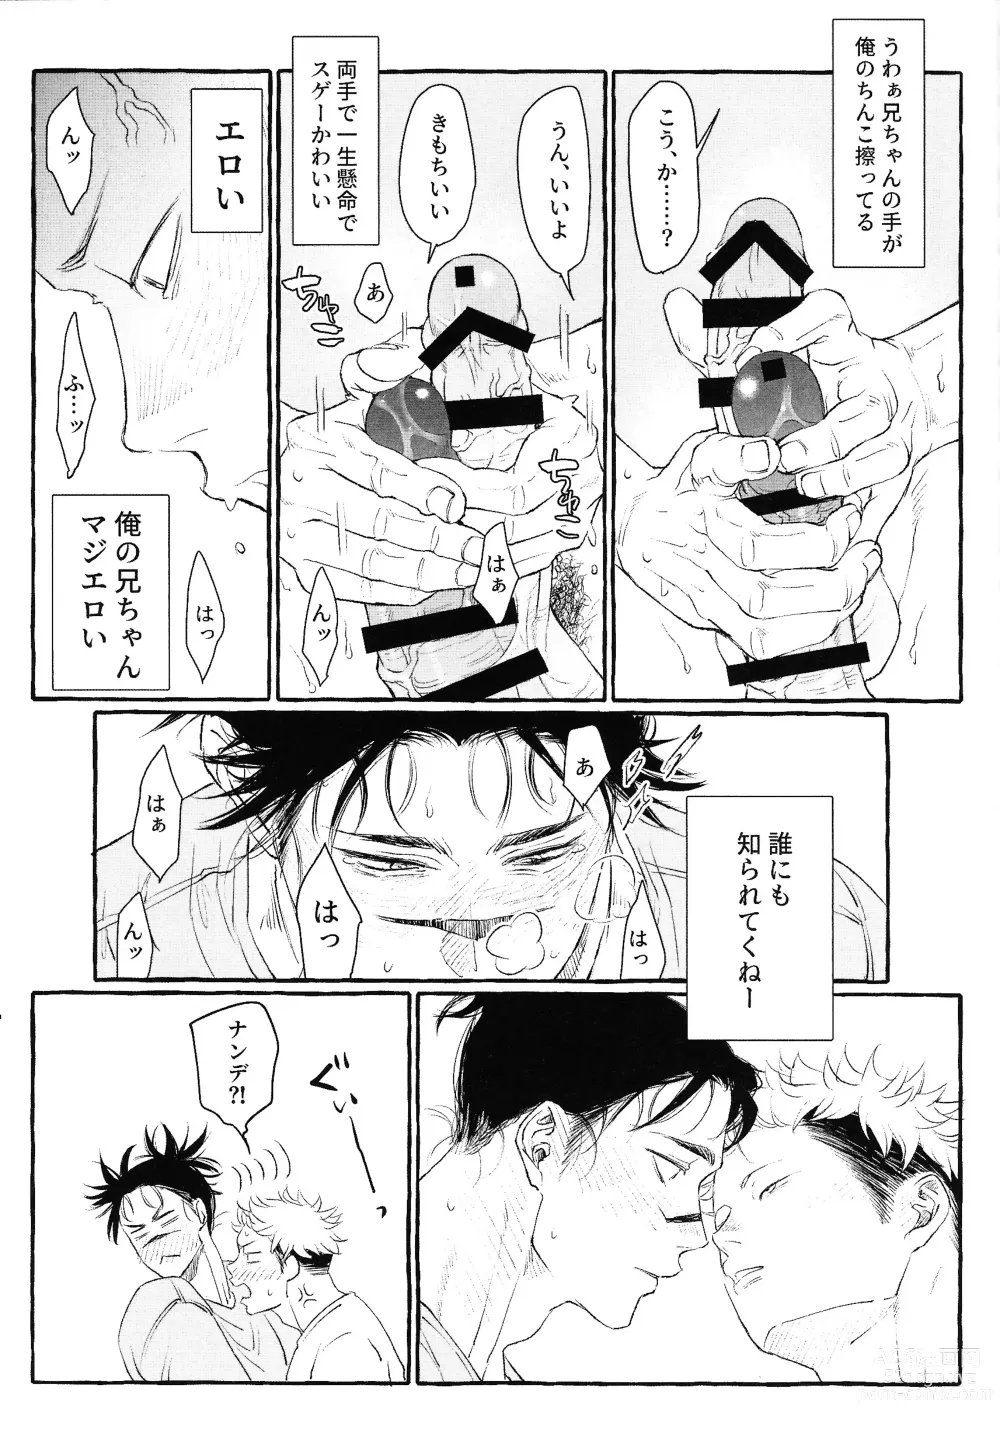 Page 52 of doujinshi Otouto no Kimochi